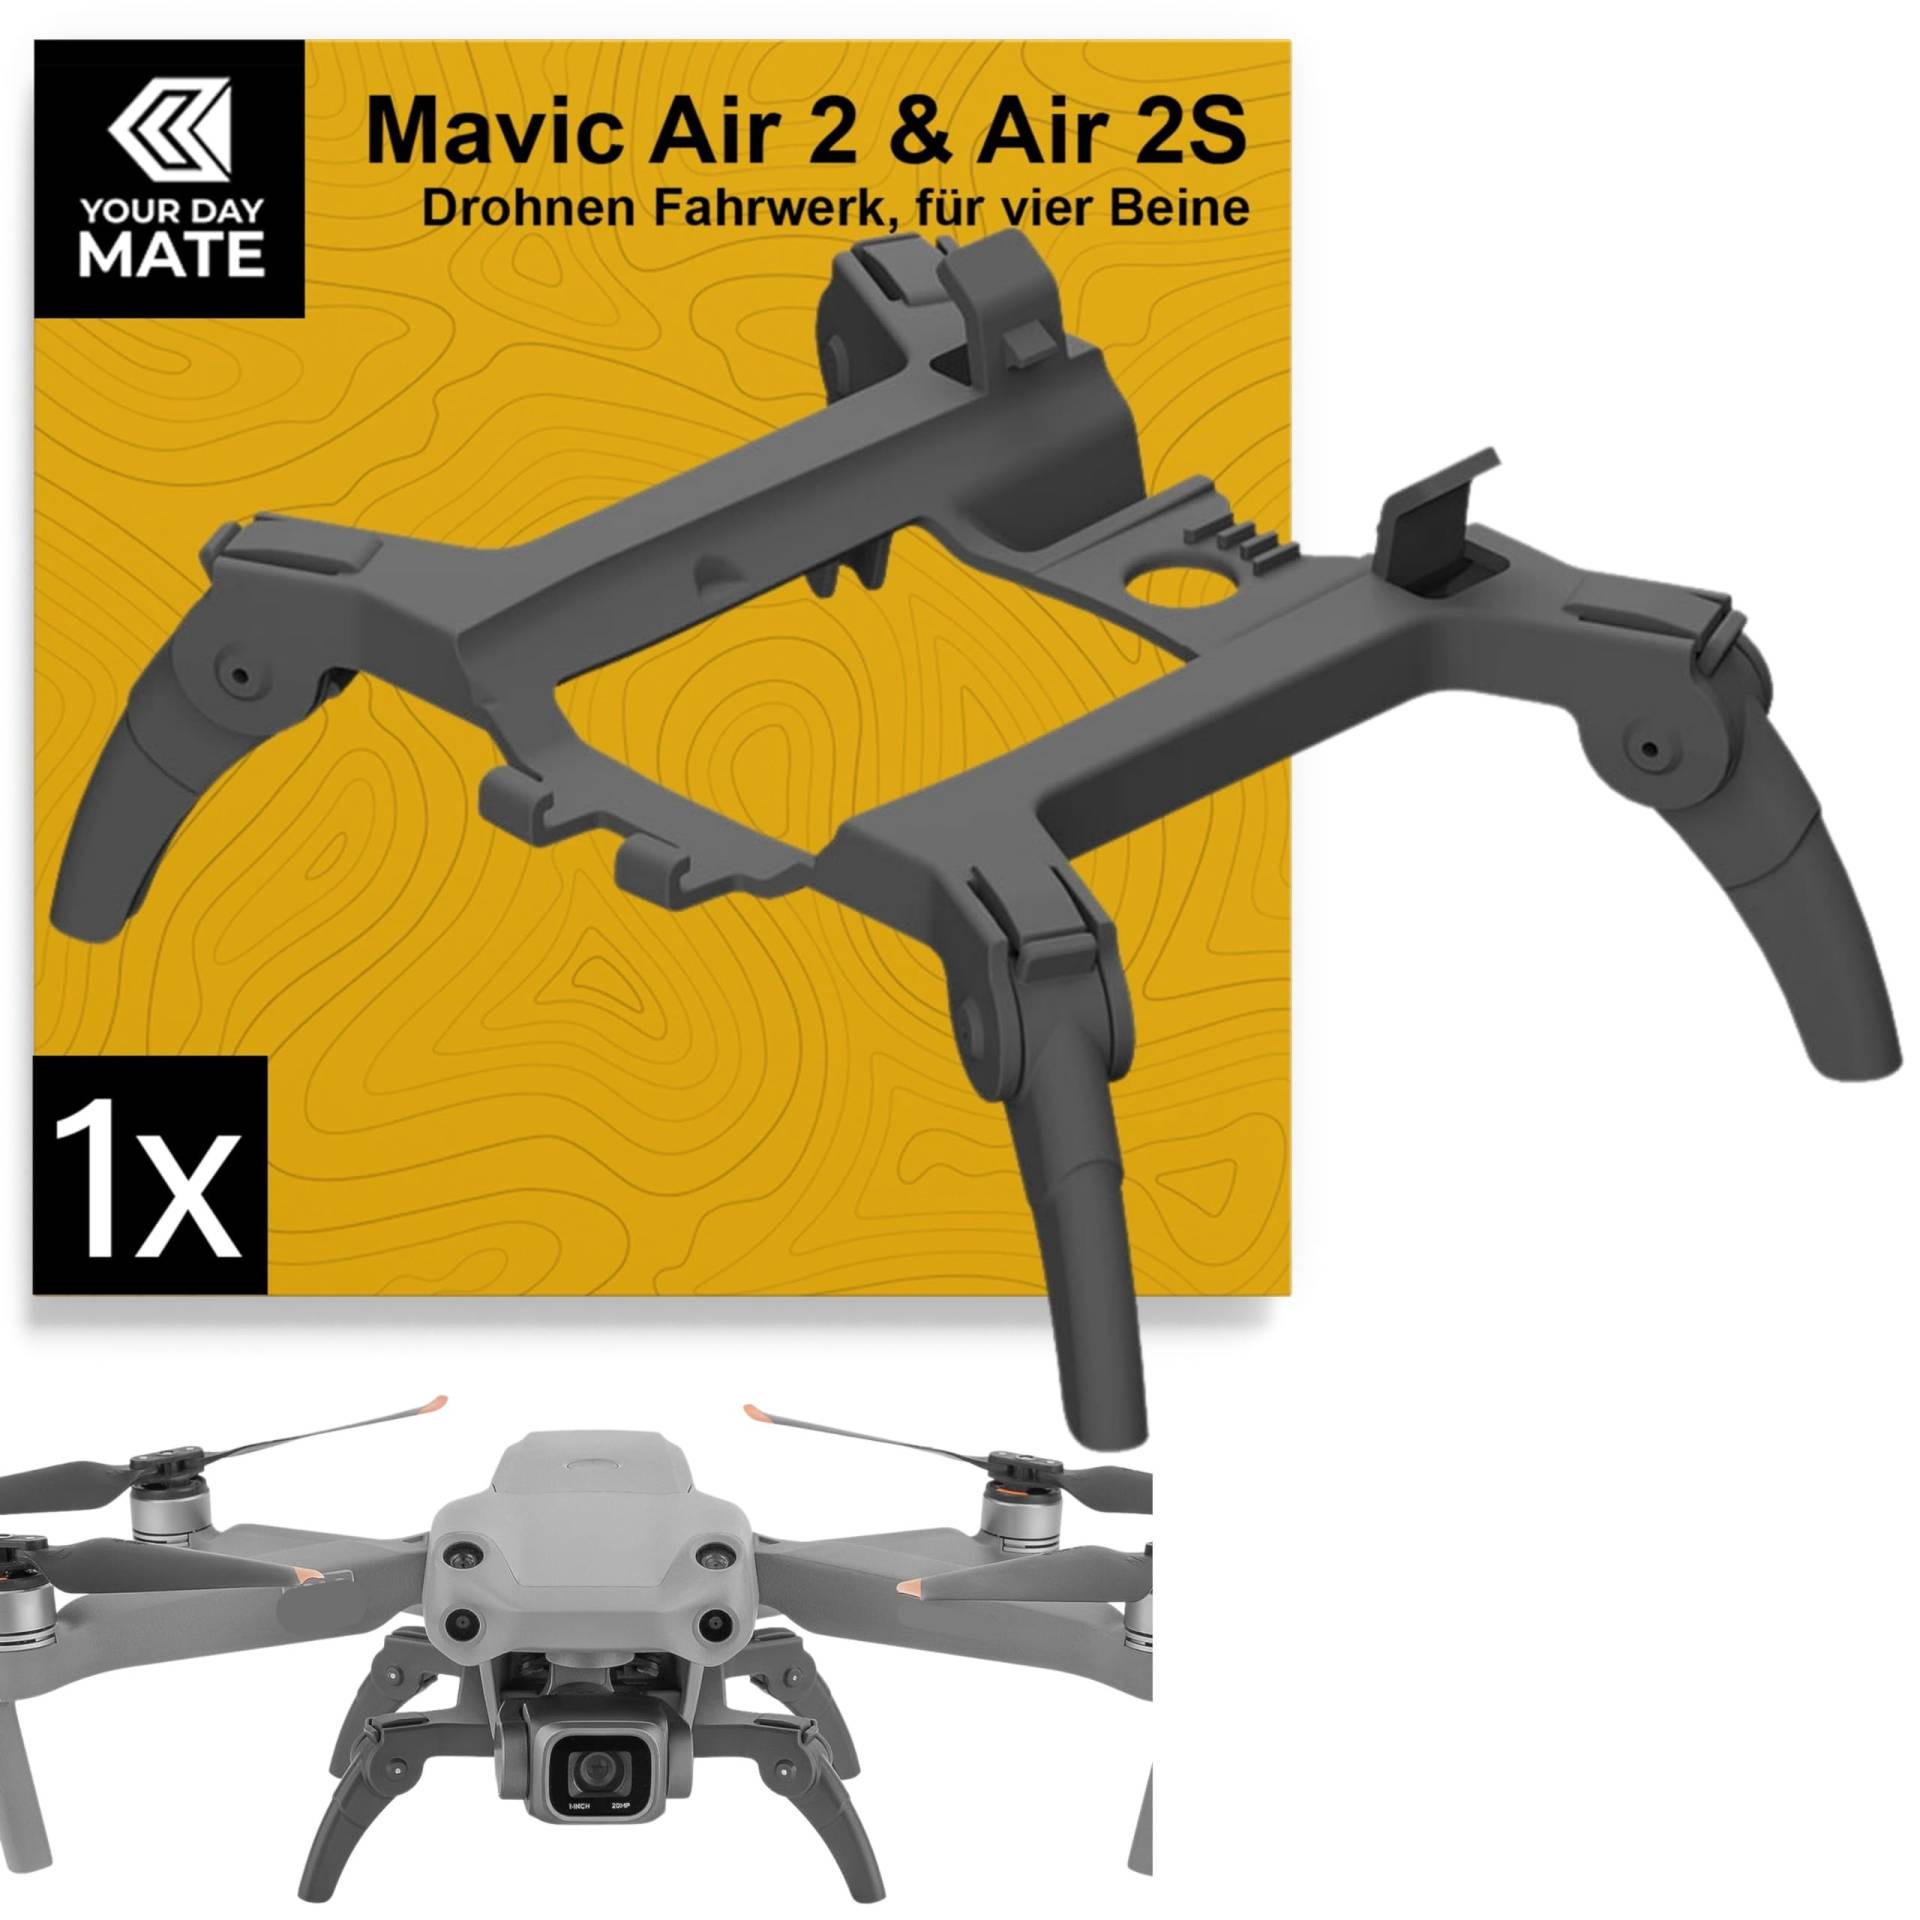 Drohnen Fahrwerk, 1 Set, kompatibel mit DJI Mavic Air 2, DJI Air 2S, Landebeine schützen Gimbal und Unterboden, Unterbau für sanftes Landen, Drohne Beine Landung, Drohne Landegestell, Landefüße Set von Your Day Mate